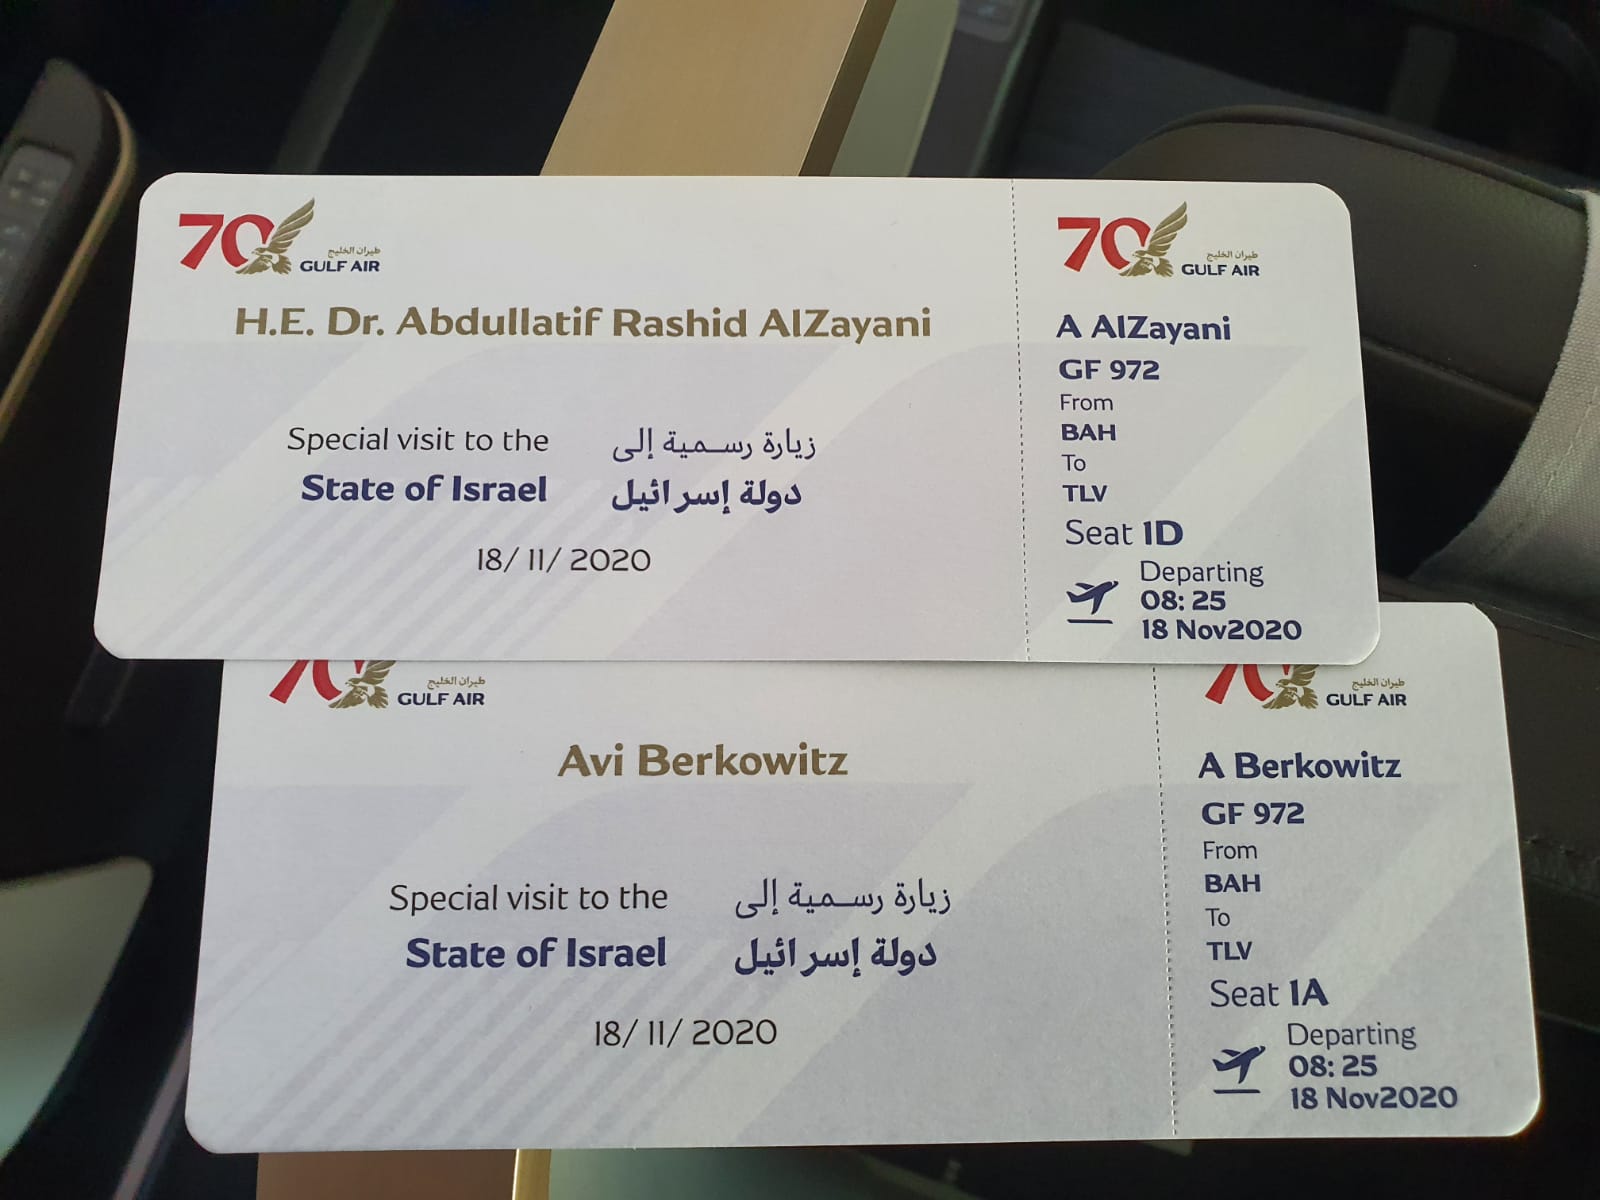 Аир билет на самолет. Gulf Air билеты. Израильский билет.